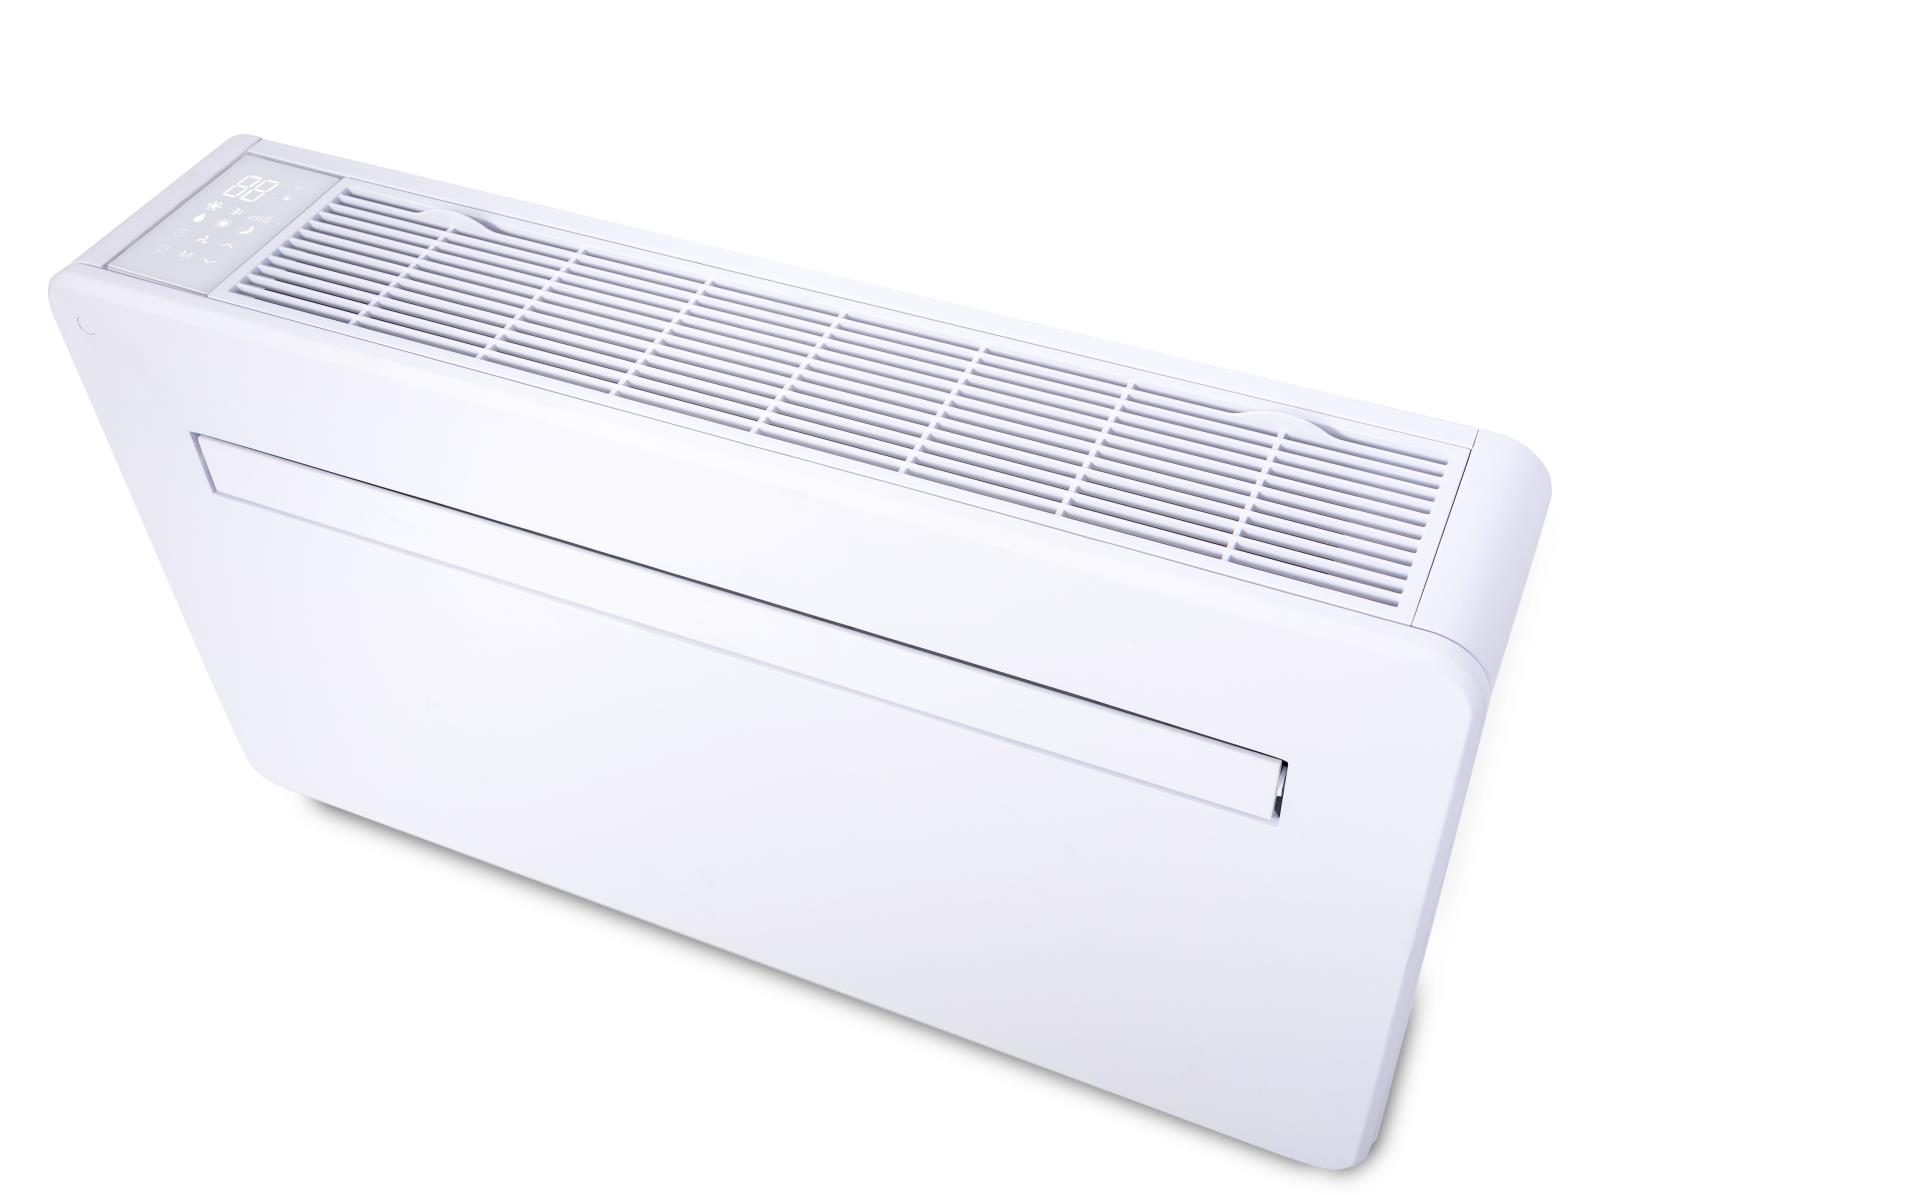 KRONE Monoblock-Klimagerät WPK-290 - zum heizen und kühlen - Wandgerät